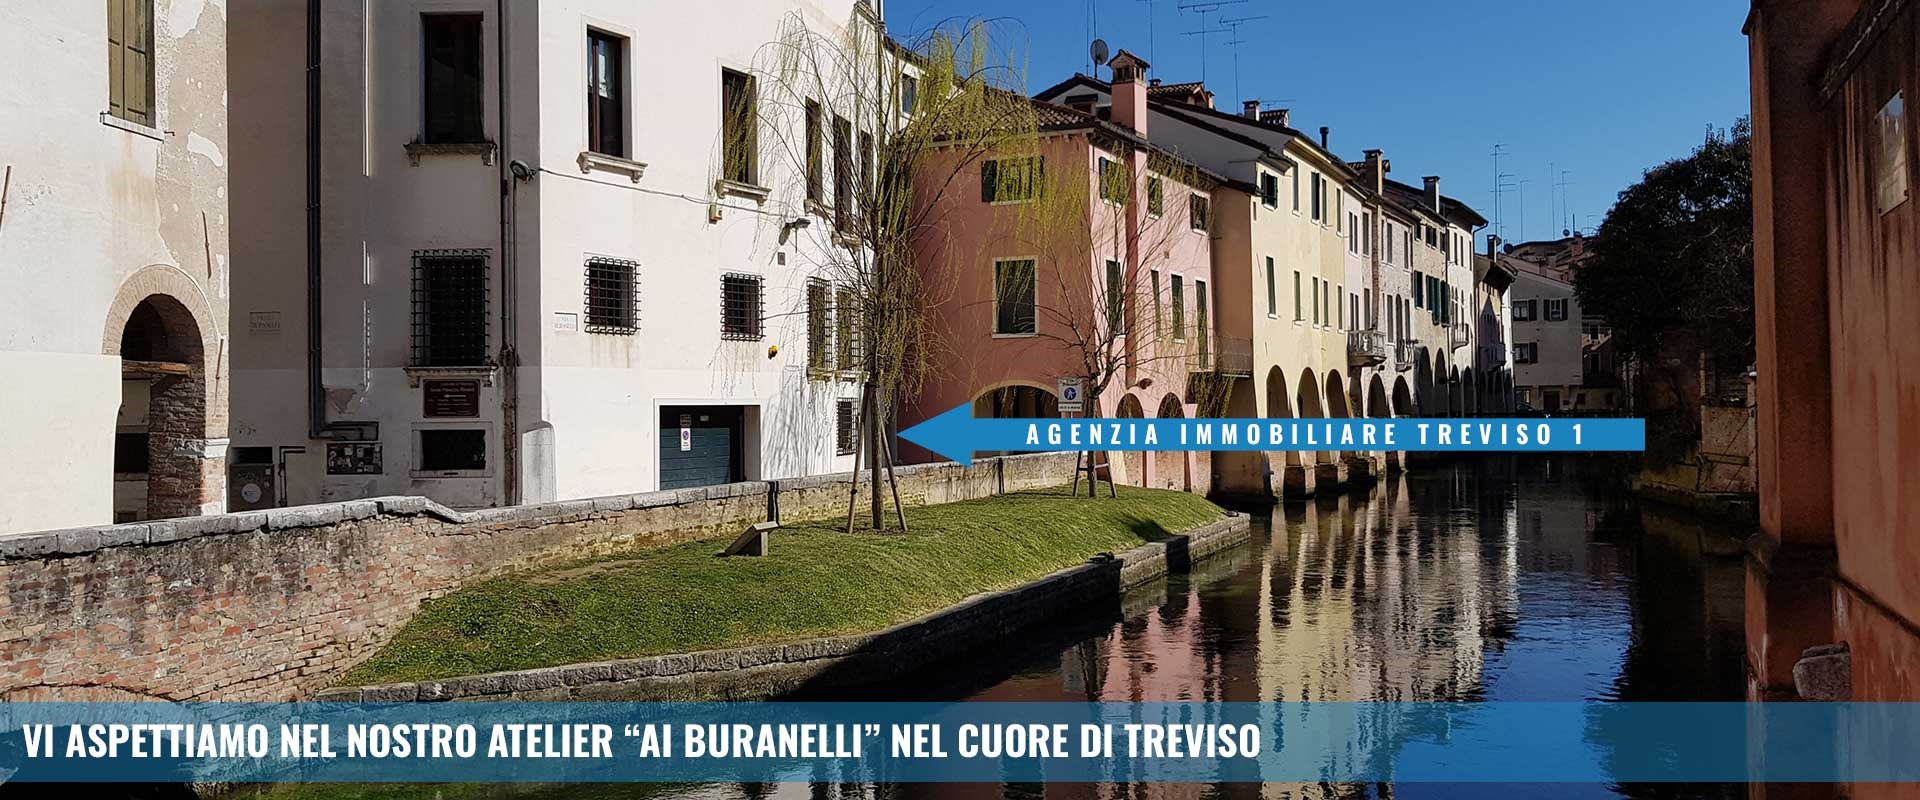 Negozi centro storico di Treviso